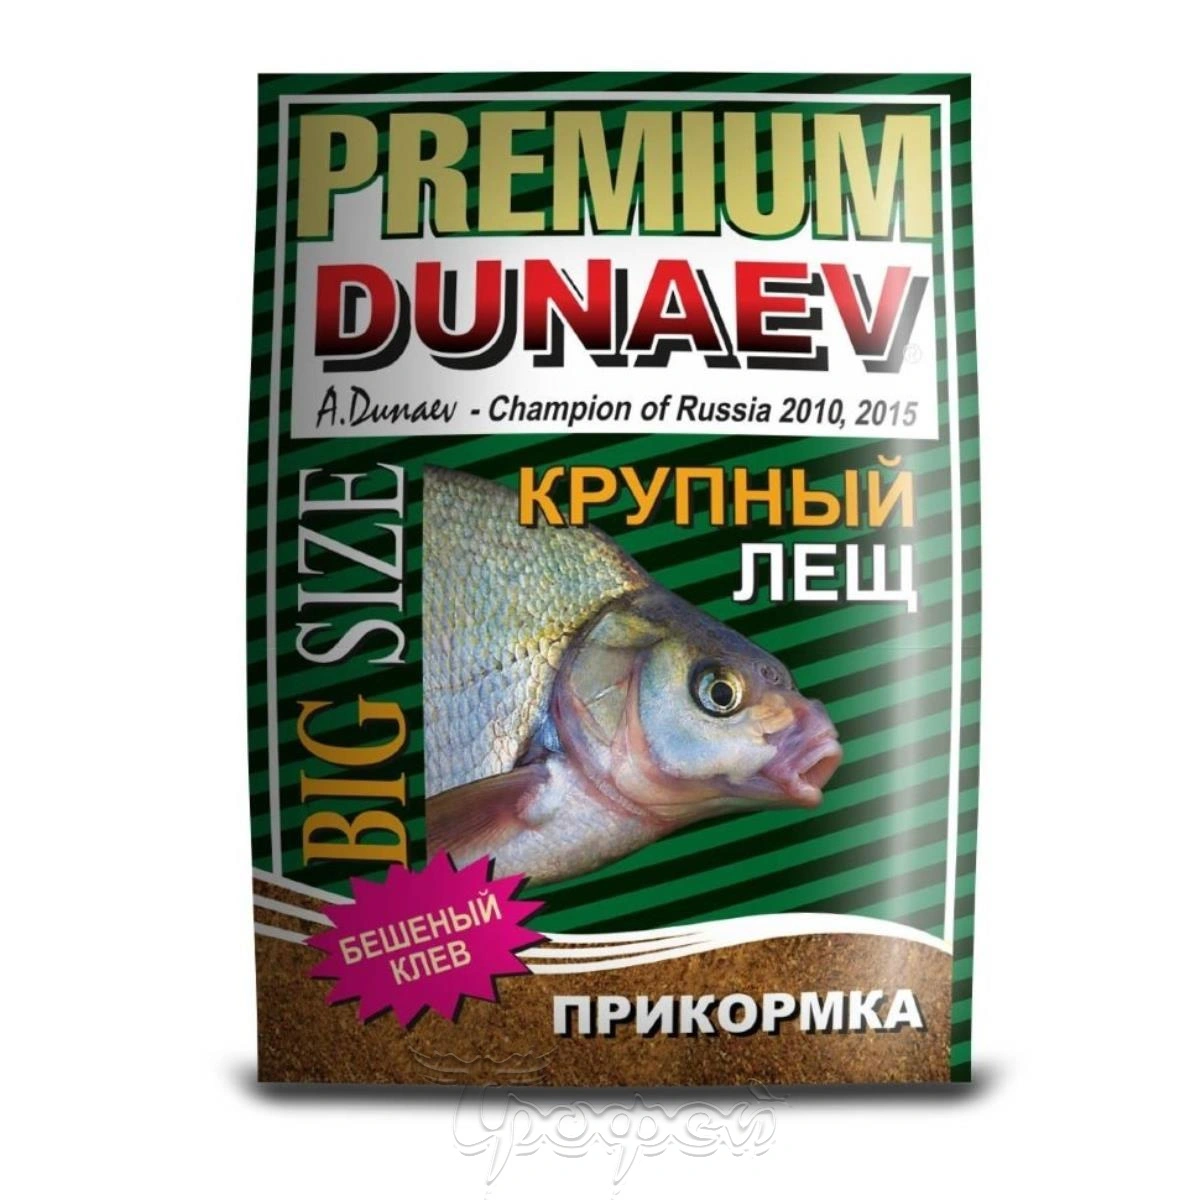 Сайт дунаева прикормки. Прикормка "Dunaev-Premium" 1кг лещ крупная фракция. Прикормка "Dunaev-Premium" крупная фракция, 1 кг. Крупный лещ прикормка Дунаев премиум. Dunaev Premium крупный лещ.